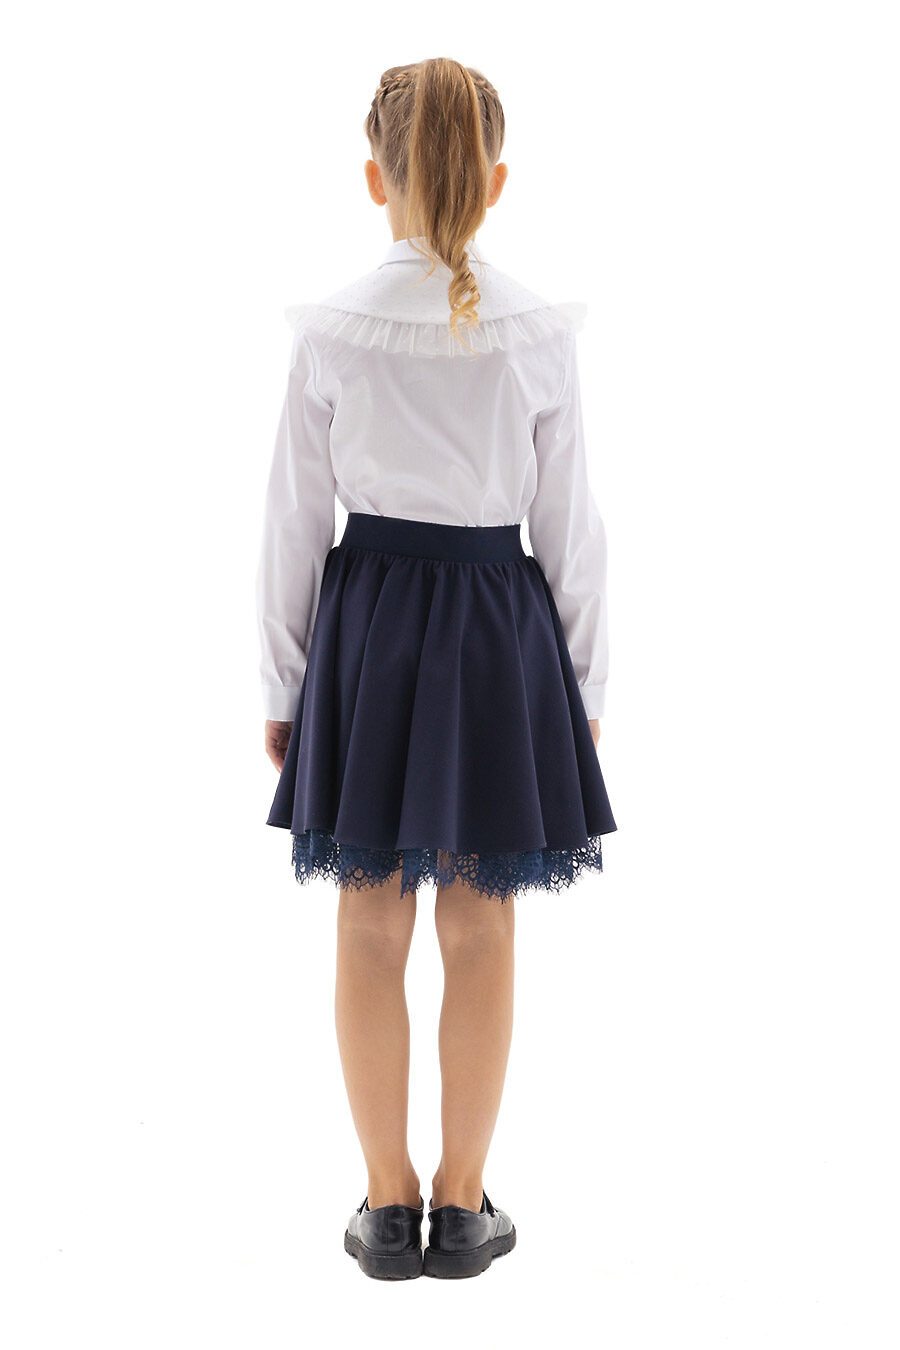 Блуза КАРАМЕЛЛИ (784930), купить в Moyo.moda